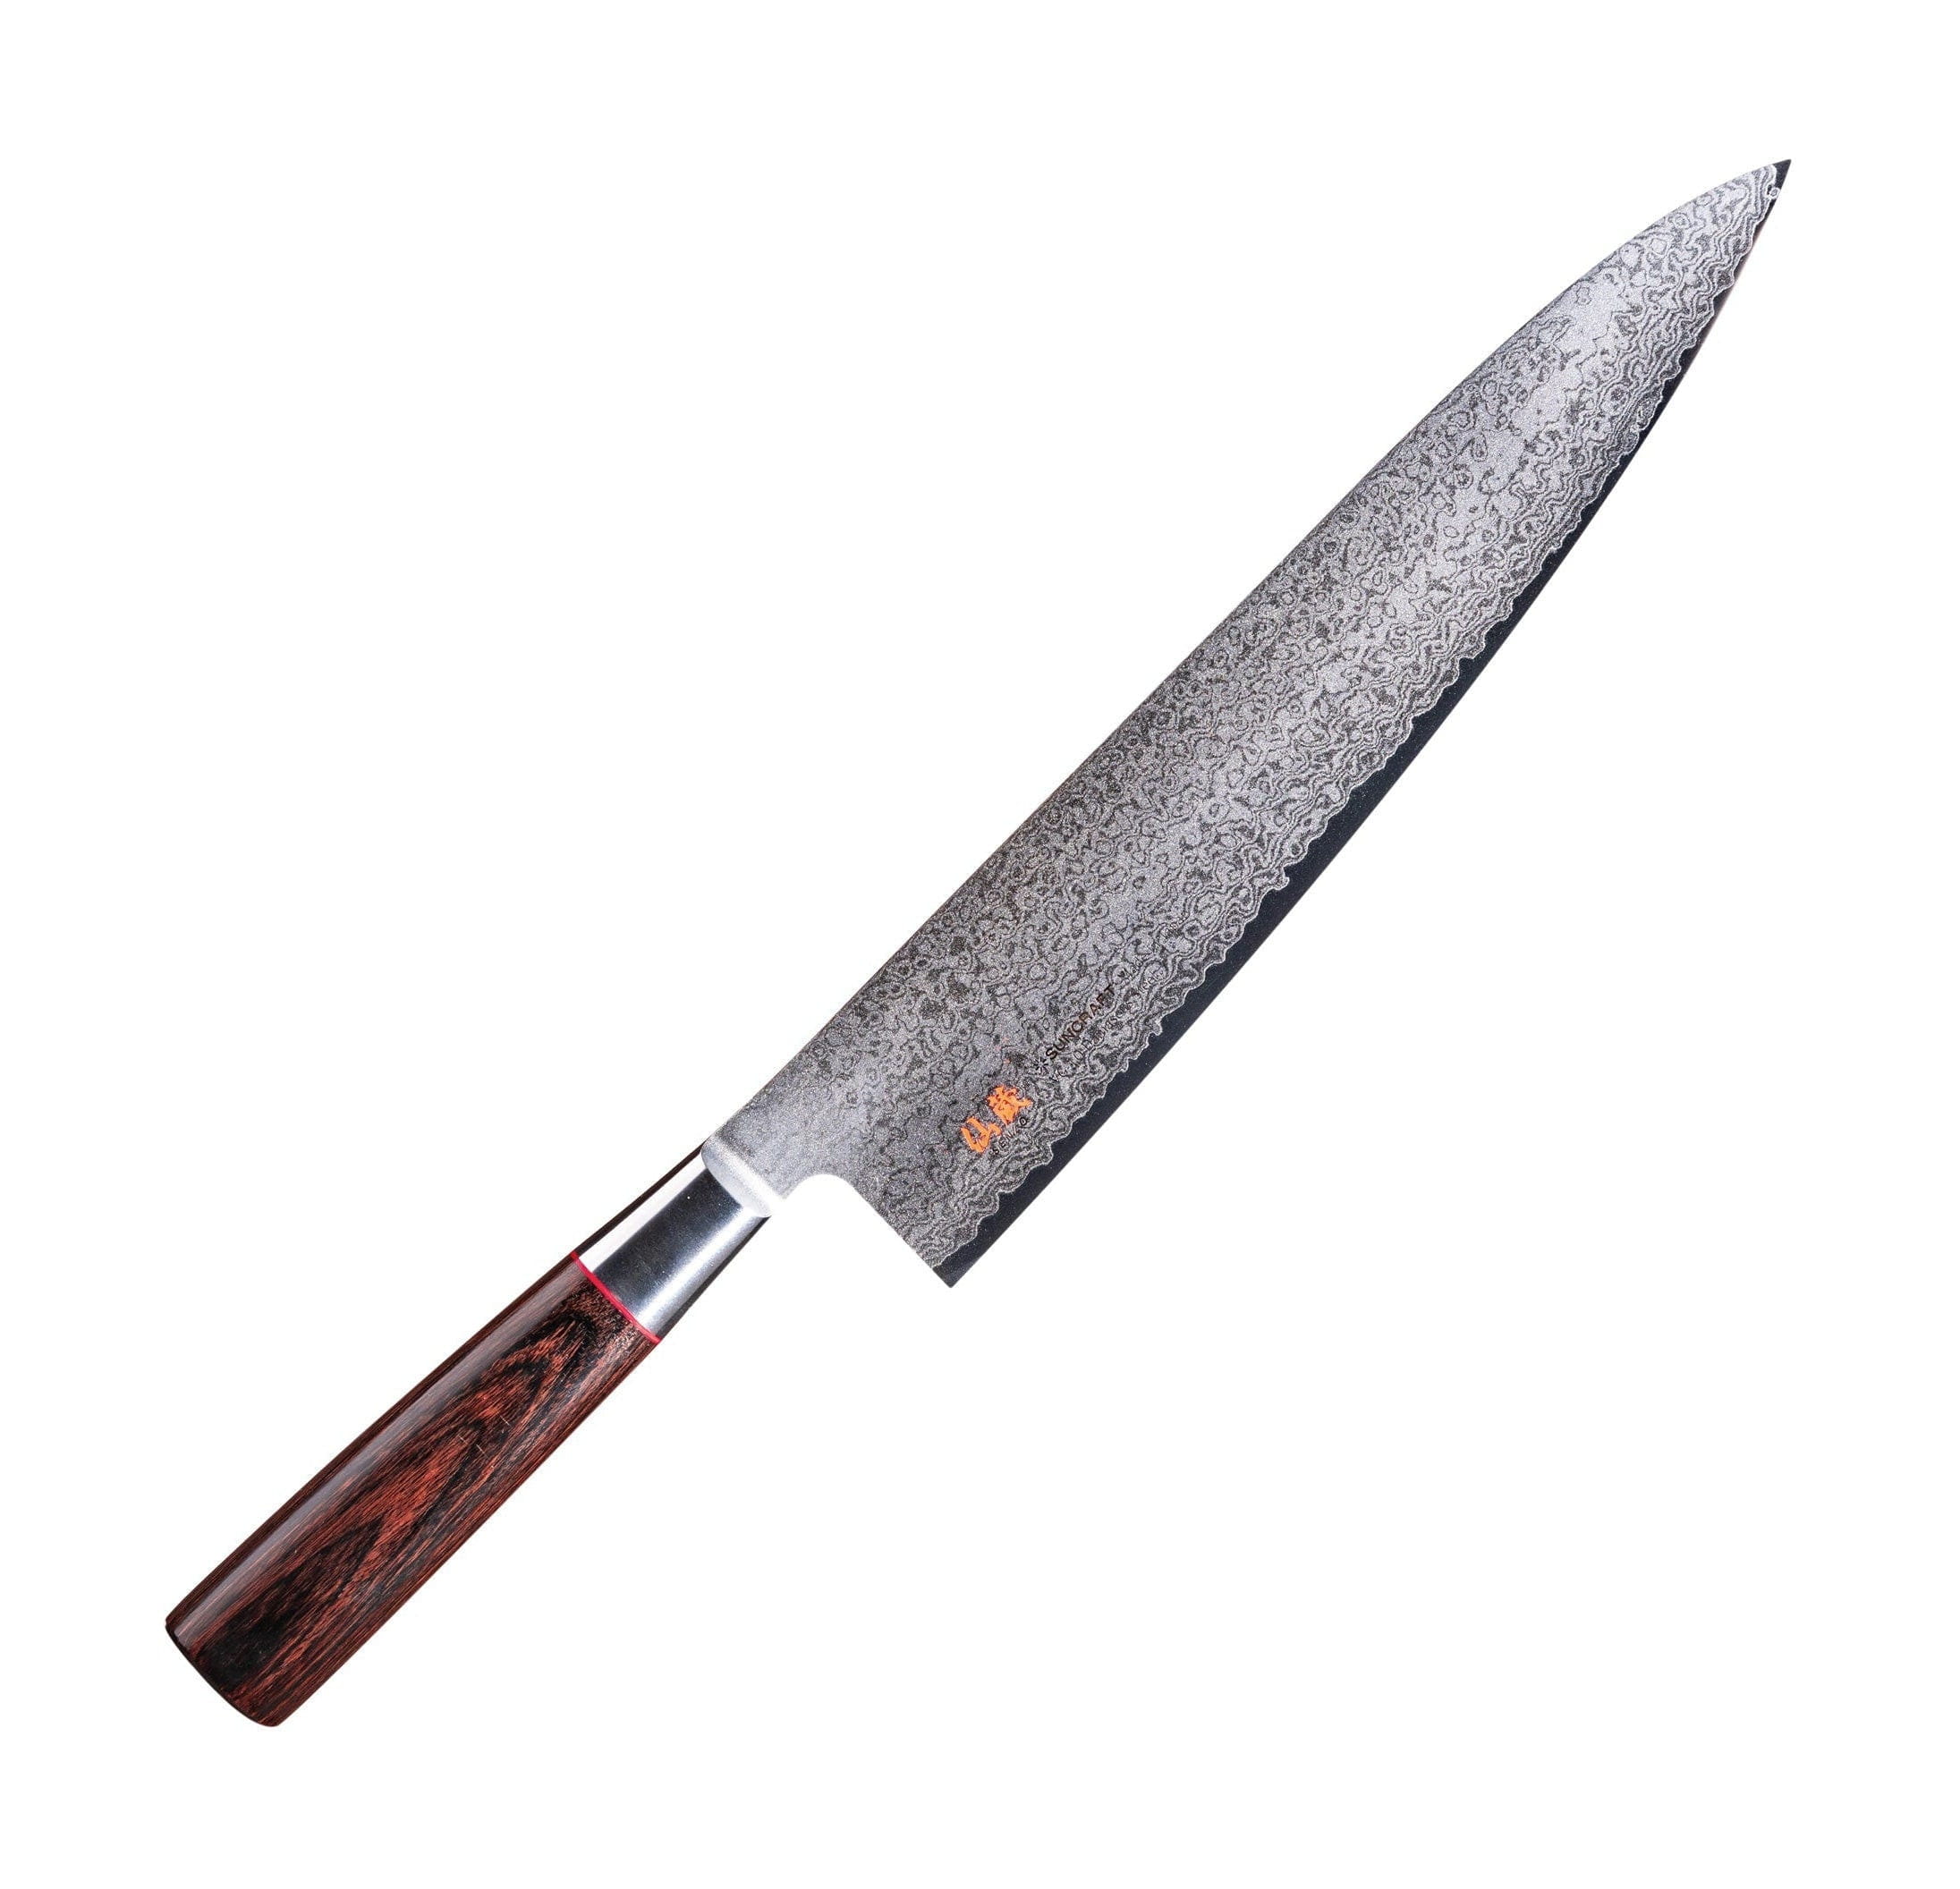 Senzo Classic ID-06 kockkniv, 24 cm